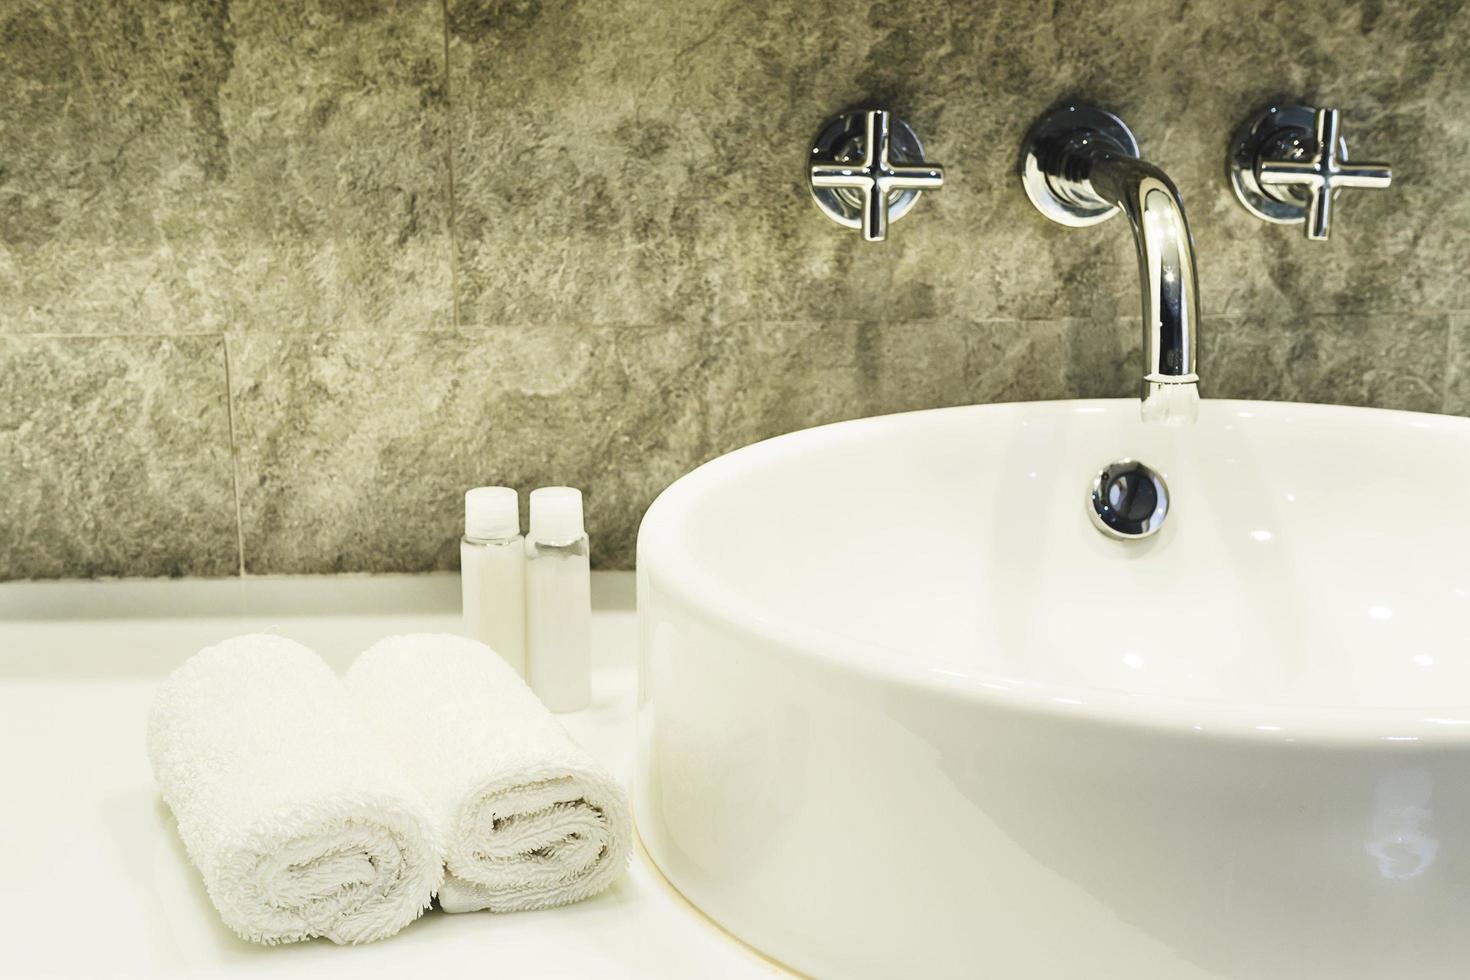 lavabo de baño con juego de limpieza blanco en un hotel foto